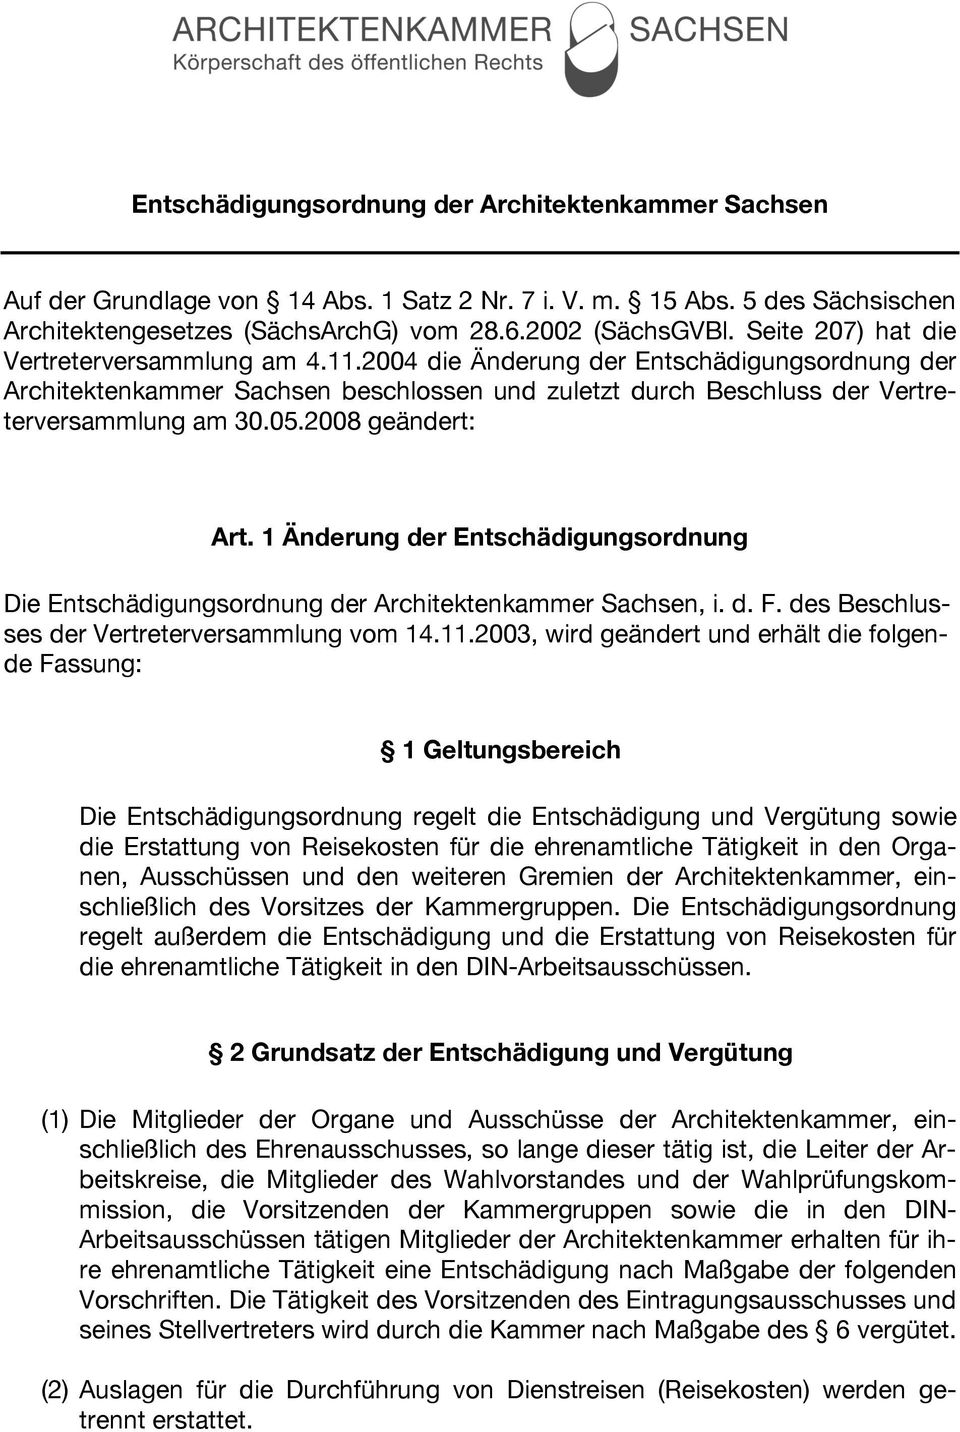 2008 geändert: Art. 1 Änderung der Entschädigungsordnung Die Entschädigungsordnung der Architektenkammer Sachsen, i. d. F. des Beschlusses der Vertreterversammlung vom 14.11.